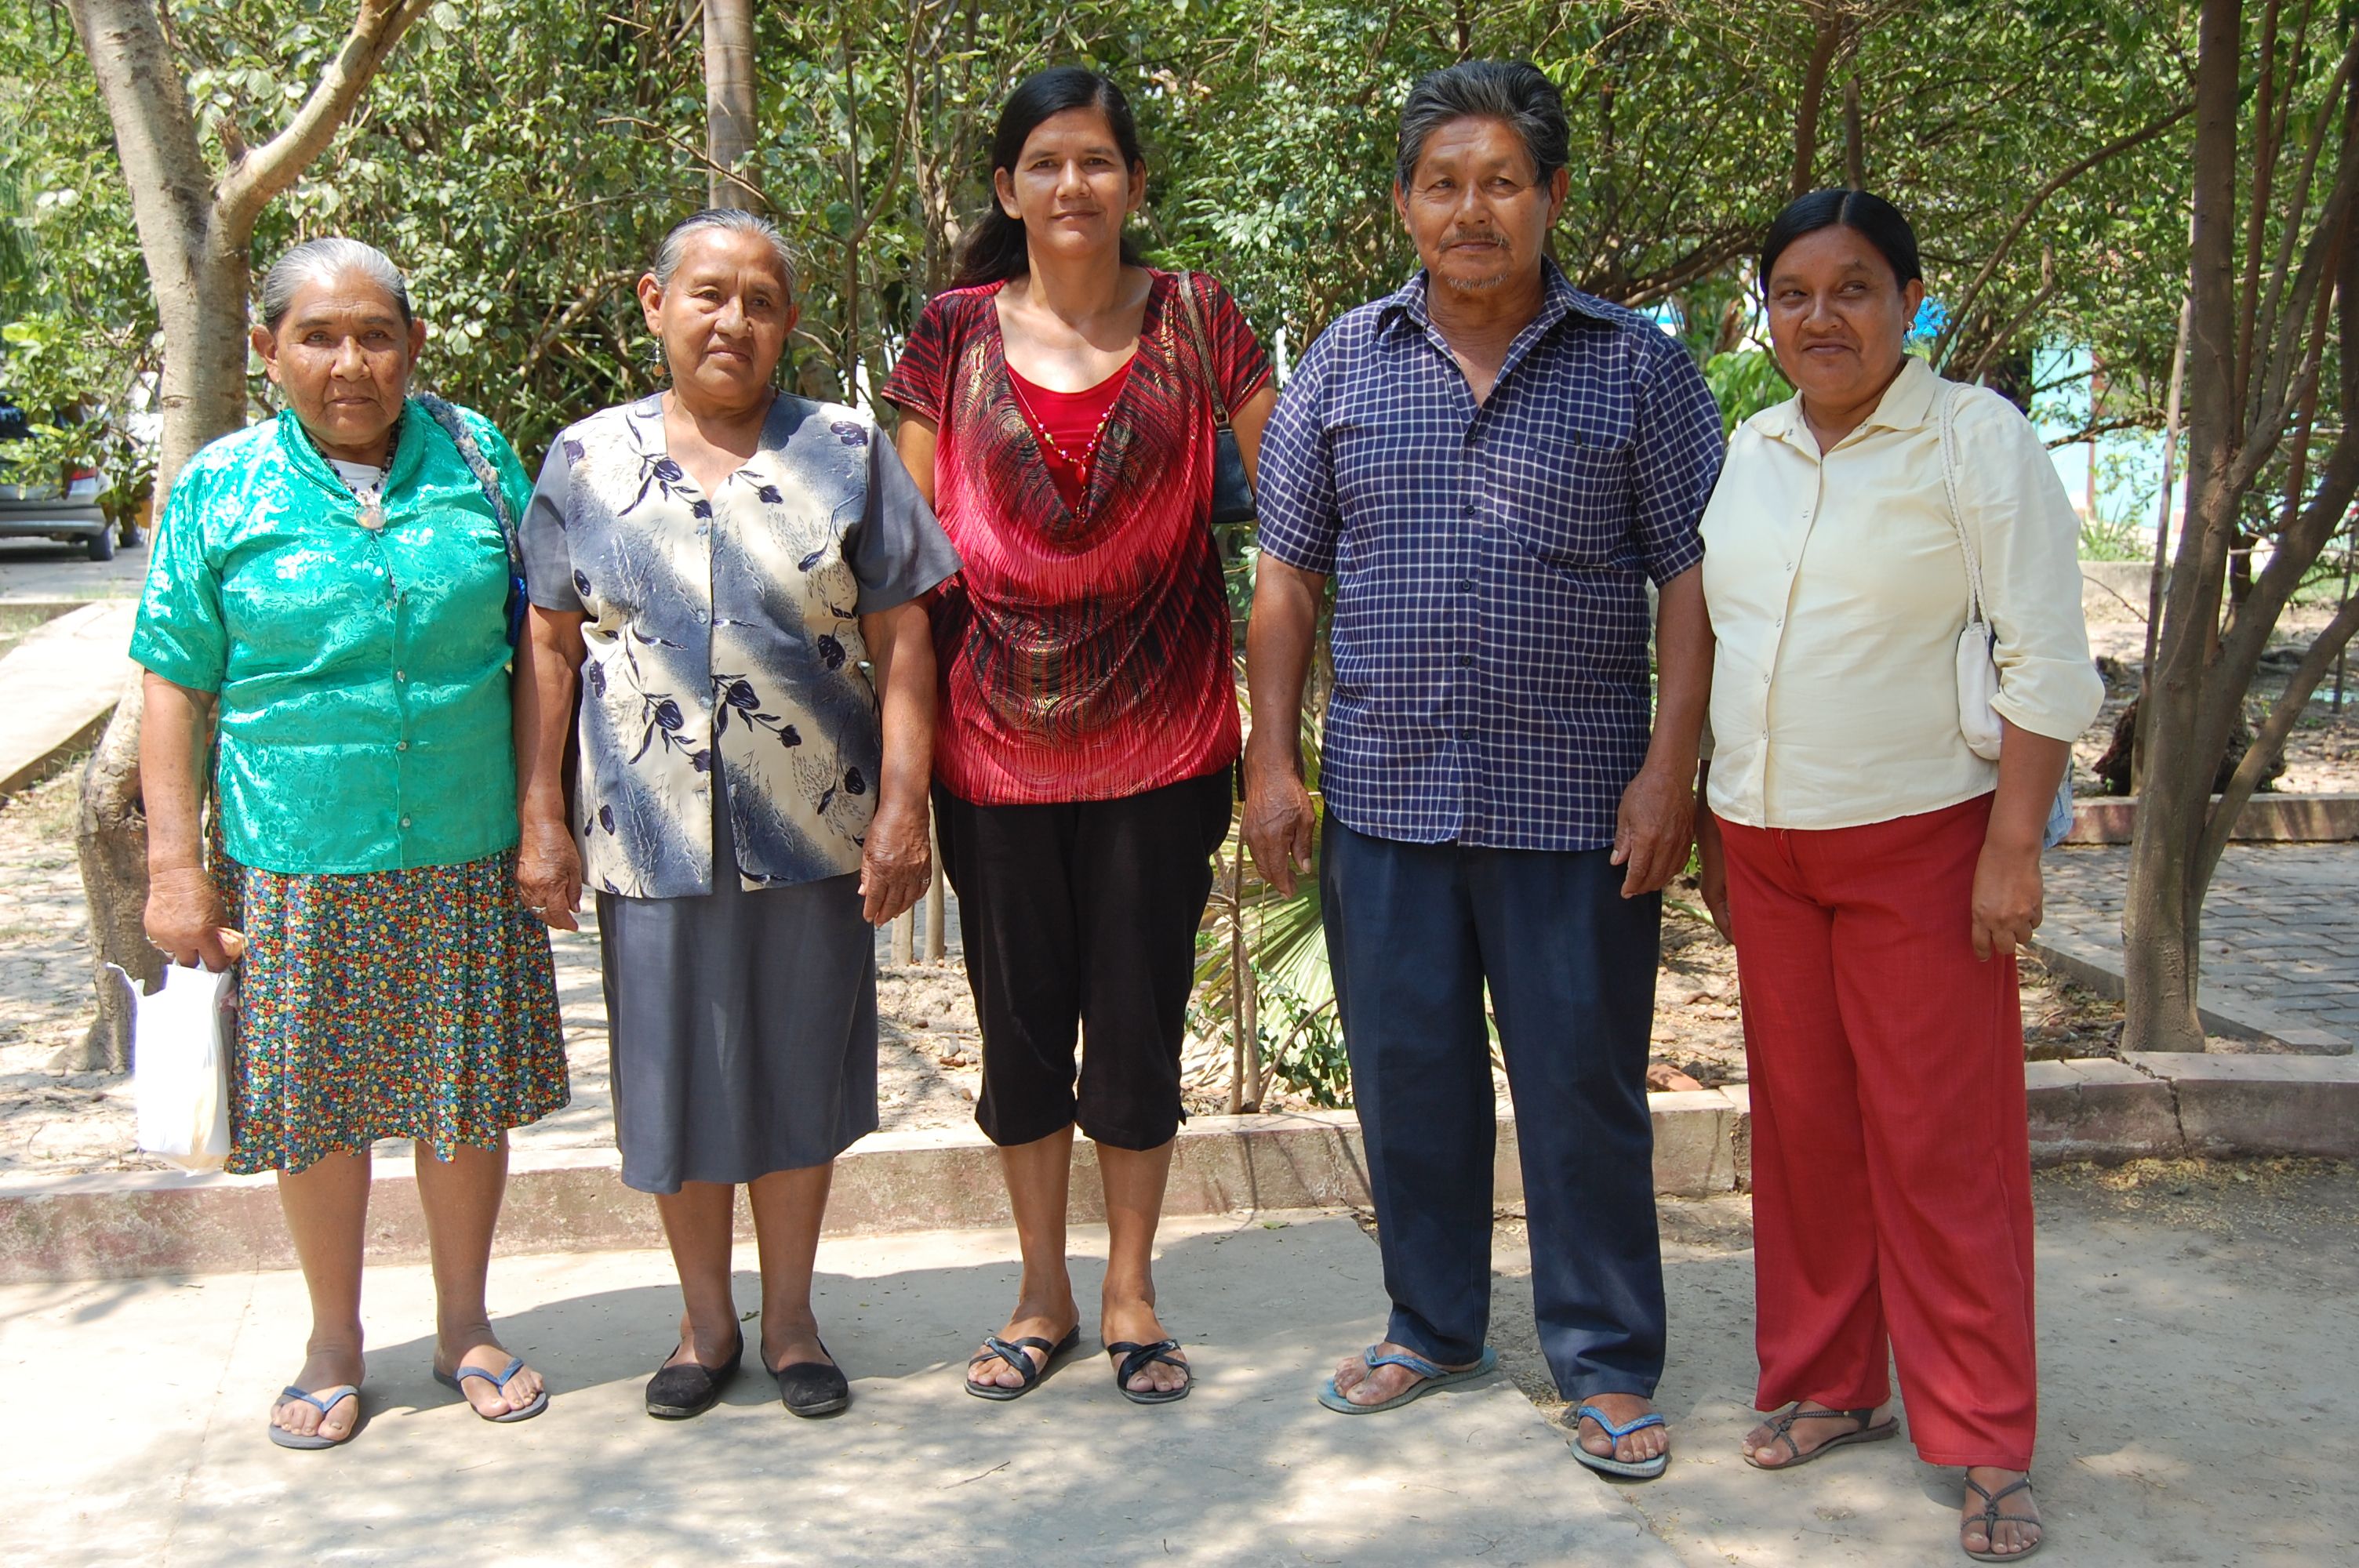 Fotos  participantes (traductores) indigenas